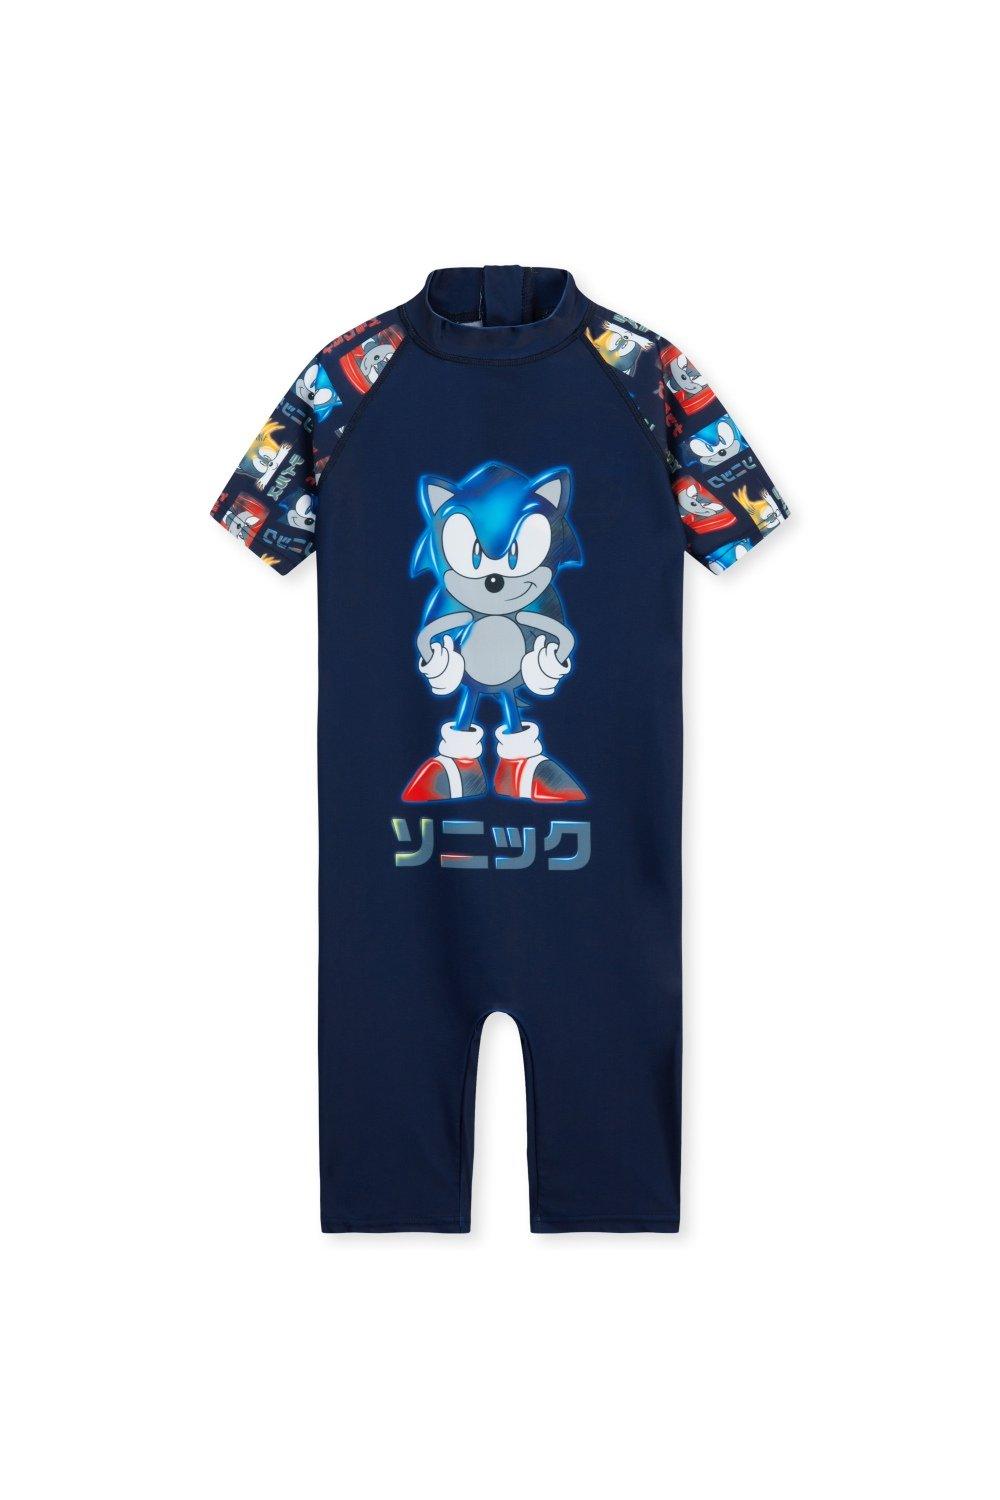 Цельный купальный костюм Купальник Sonic the Hedgehog, мультиколор детский слитный купальник kavkas для девочек летняя пляжная одежда детский купальный костюм для маленьких девочек от 12 месяцев до 8 лет